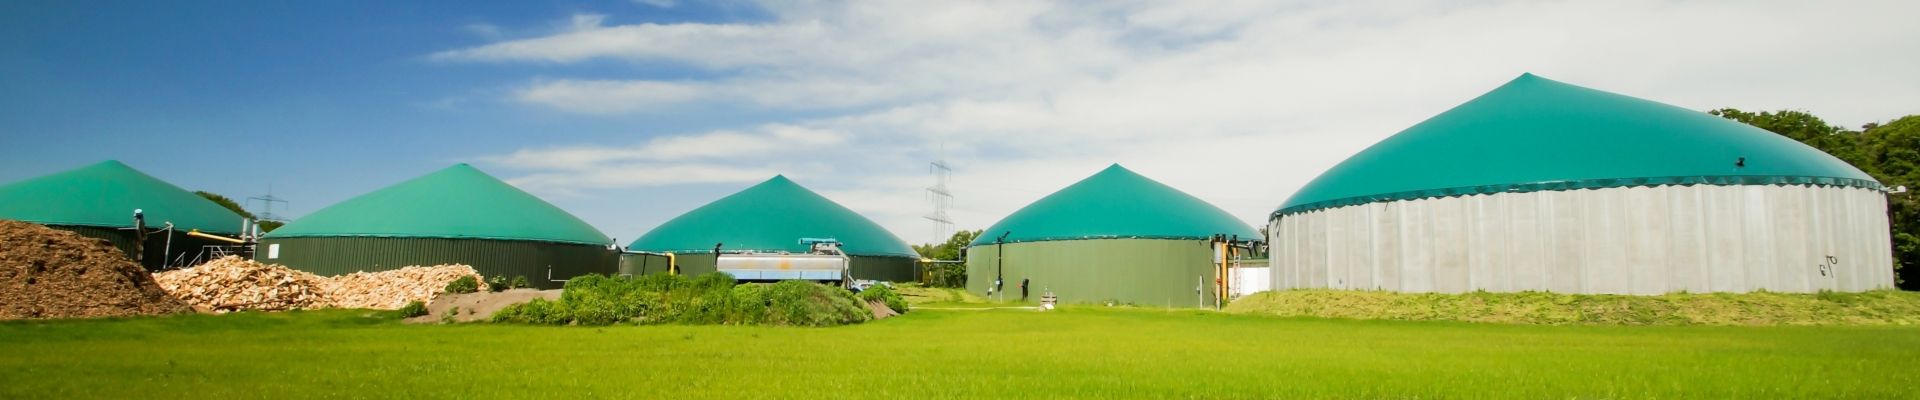 Red de centrales eléctricas formada por plantas de biogás